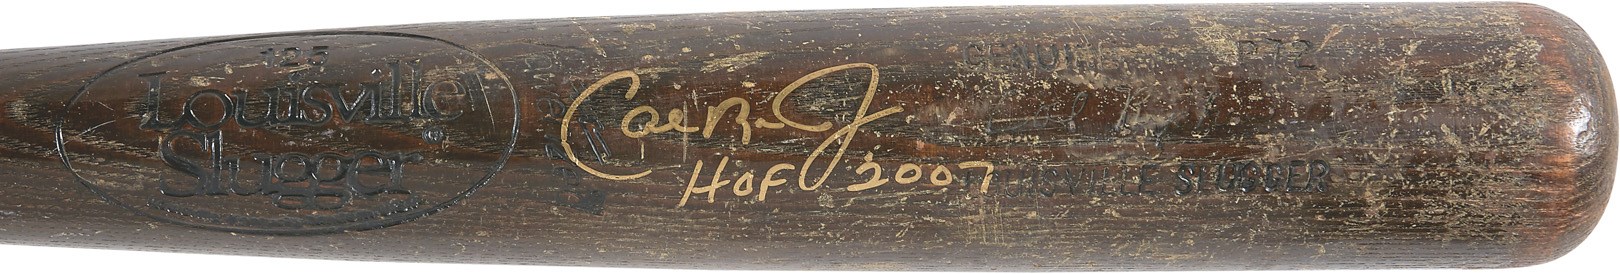 Baseball Equipment - 1984-86 Cal Ripken Jr. Signed Game Used Orioles Bat (PSA GU 8)